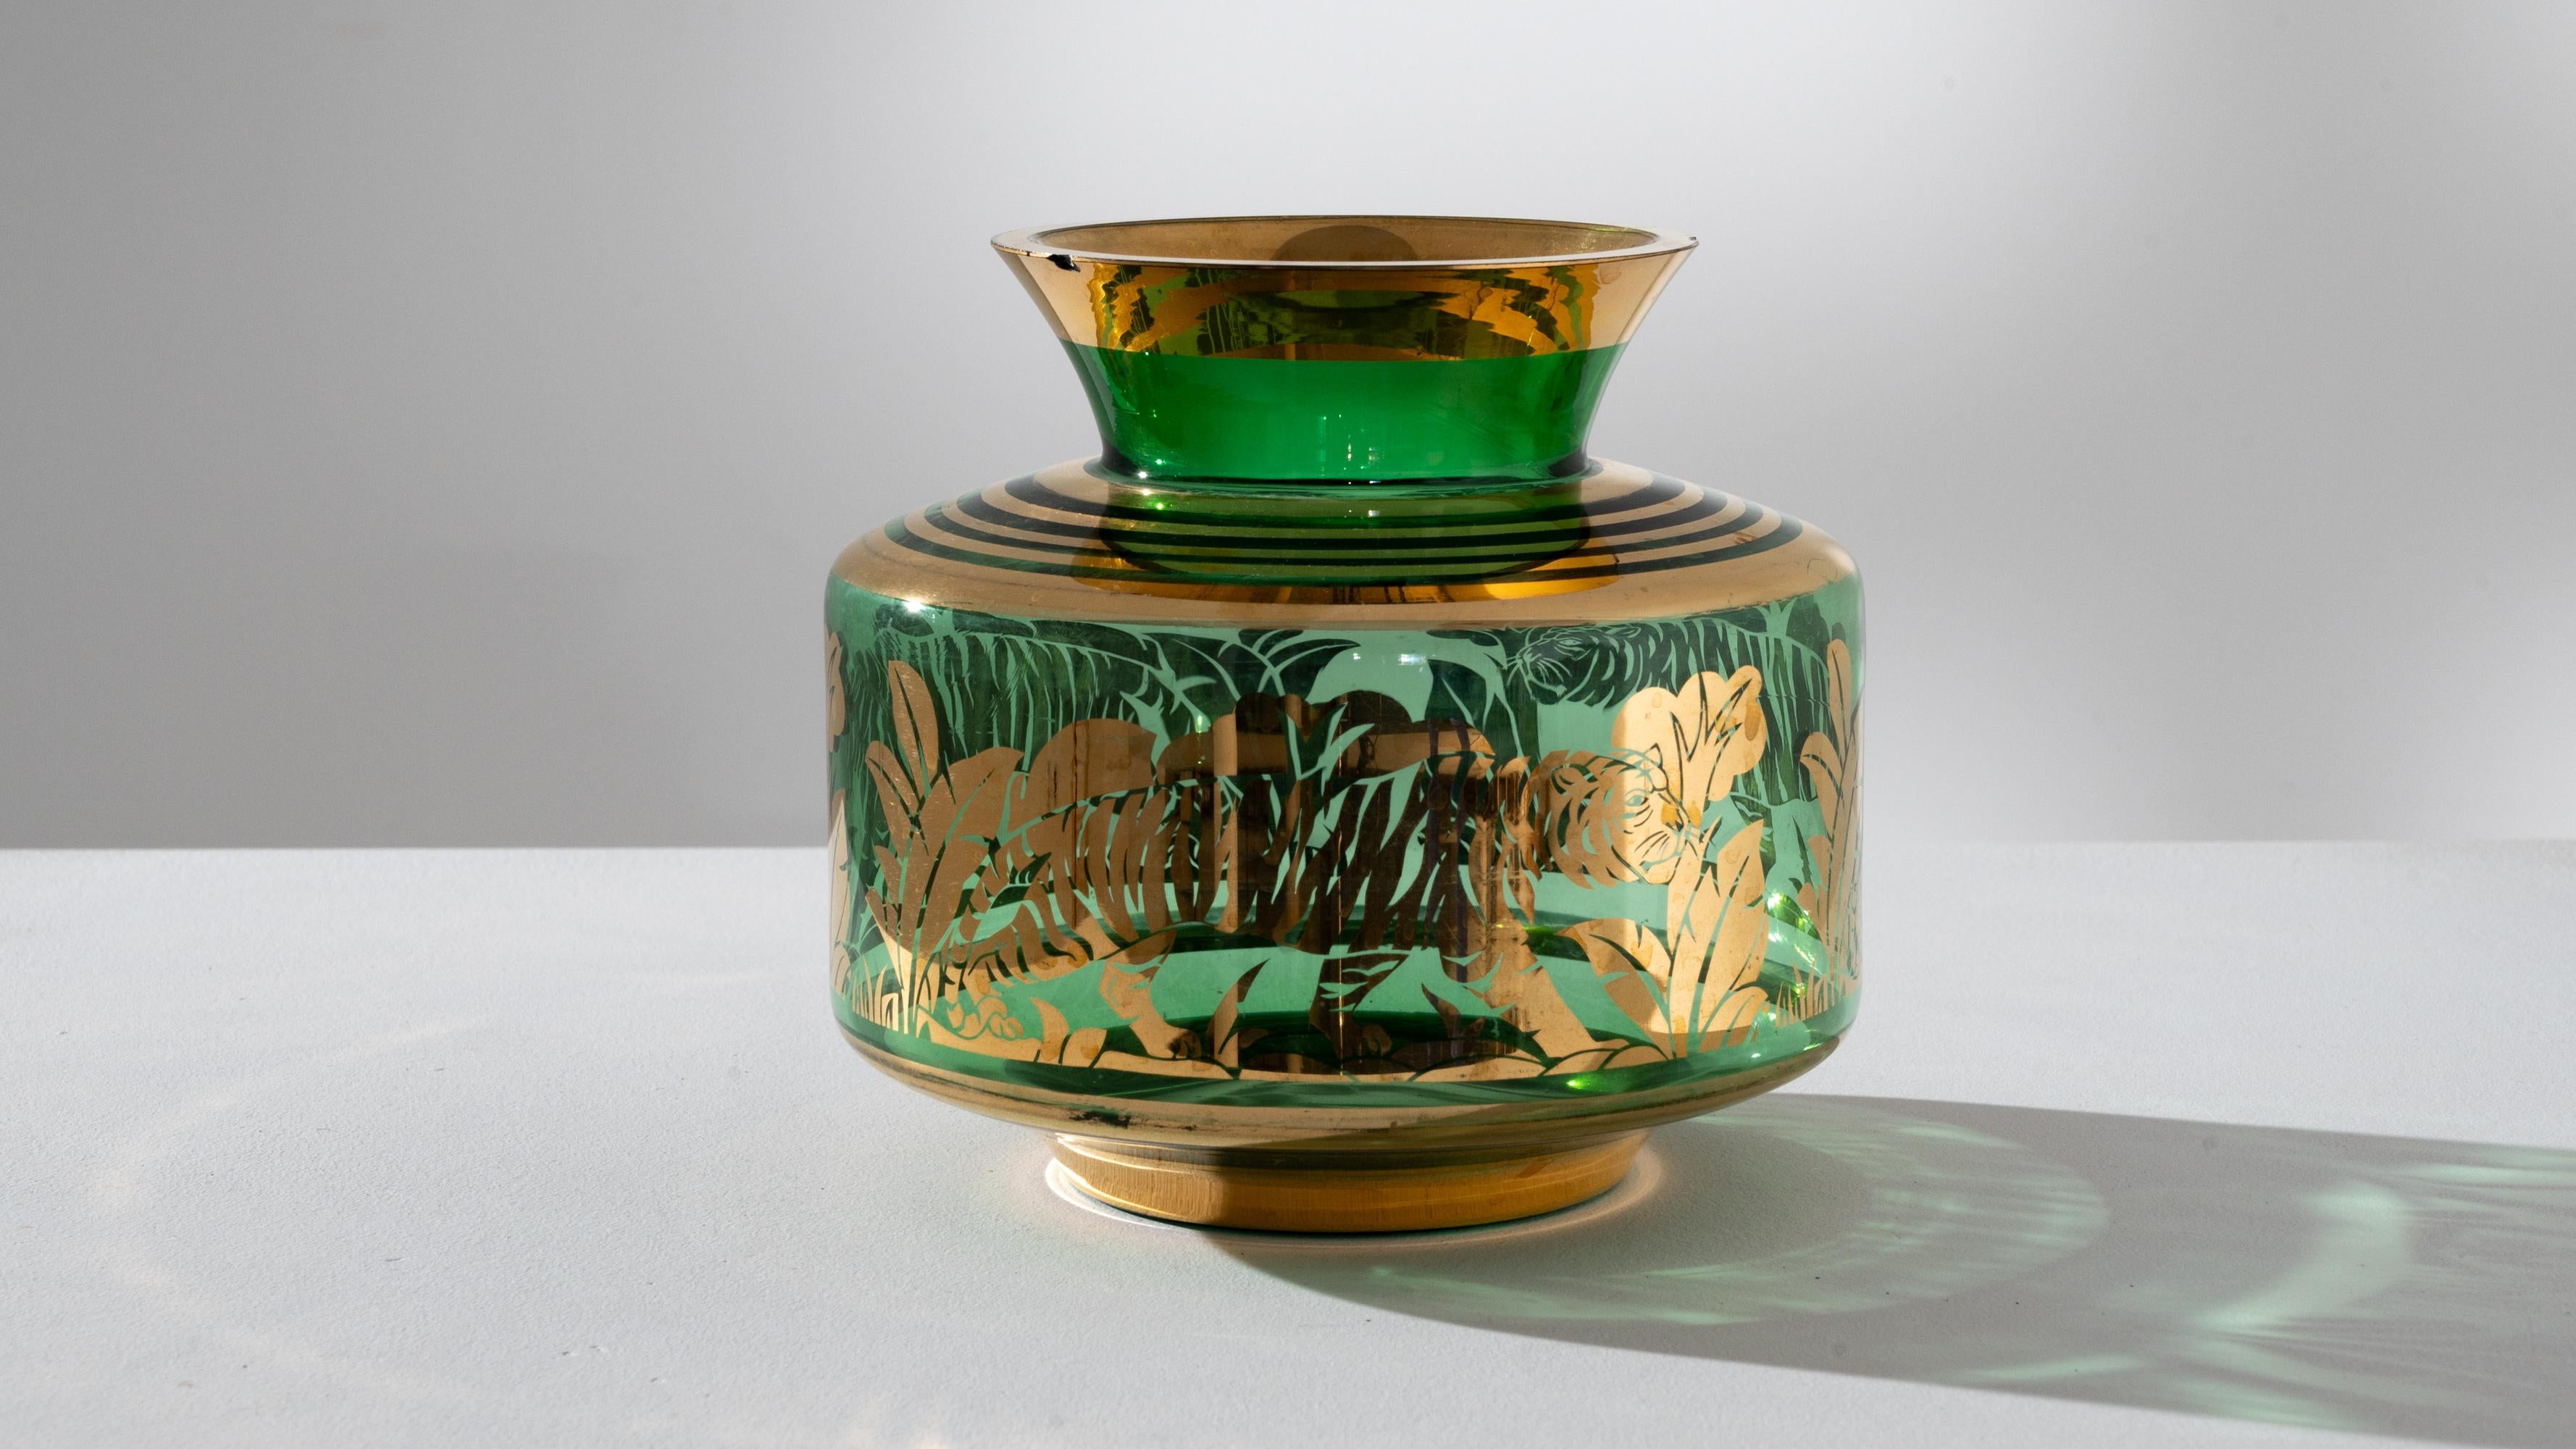 Verschönern Sie Ihren Raum mit der fesselnden Ausstrahlung dieser französischen Tiger-Glasvase aus den 1940er Jahren. Der satte Grünton der Vase, verziert mit luxuriösen Goldakzenten, entführt Sie in eine exotische Umgebung. Die filigranen